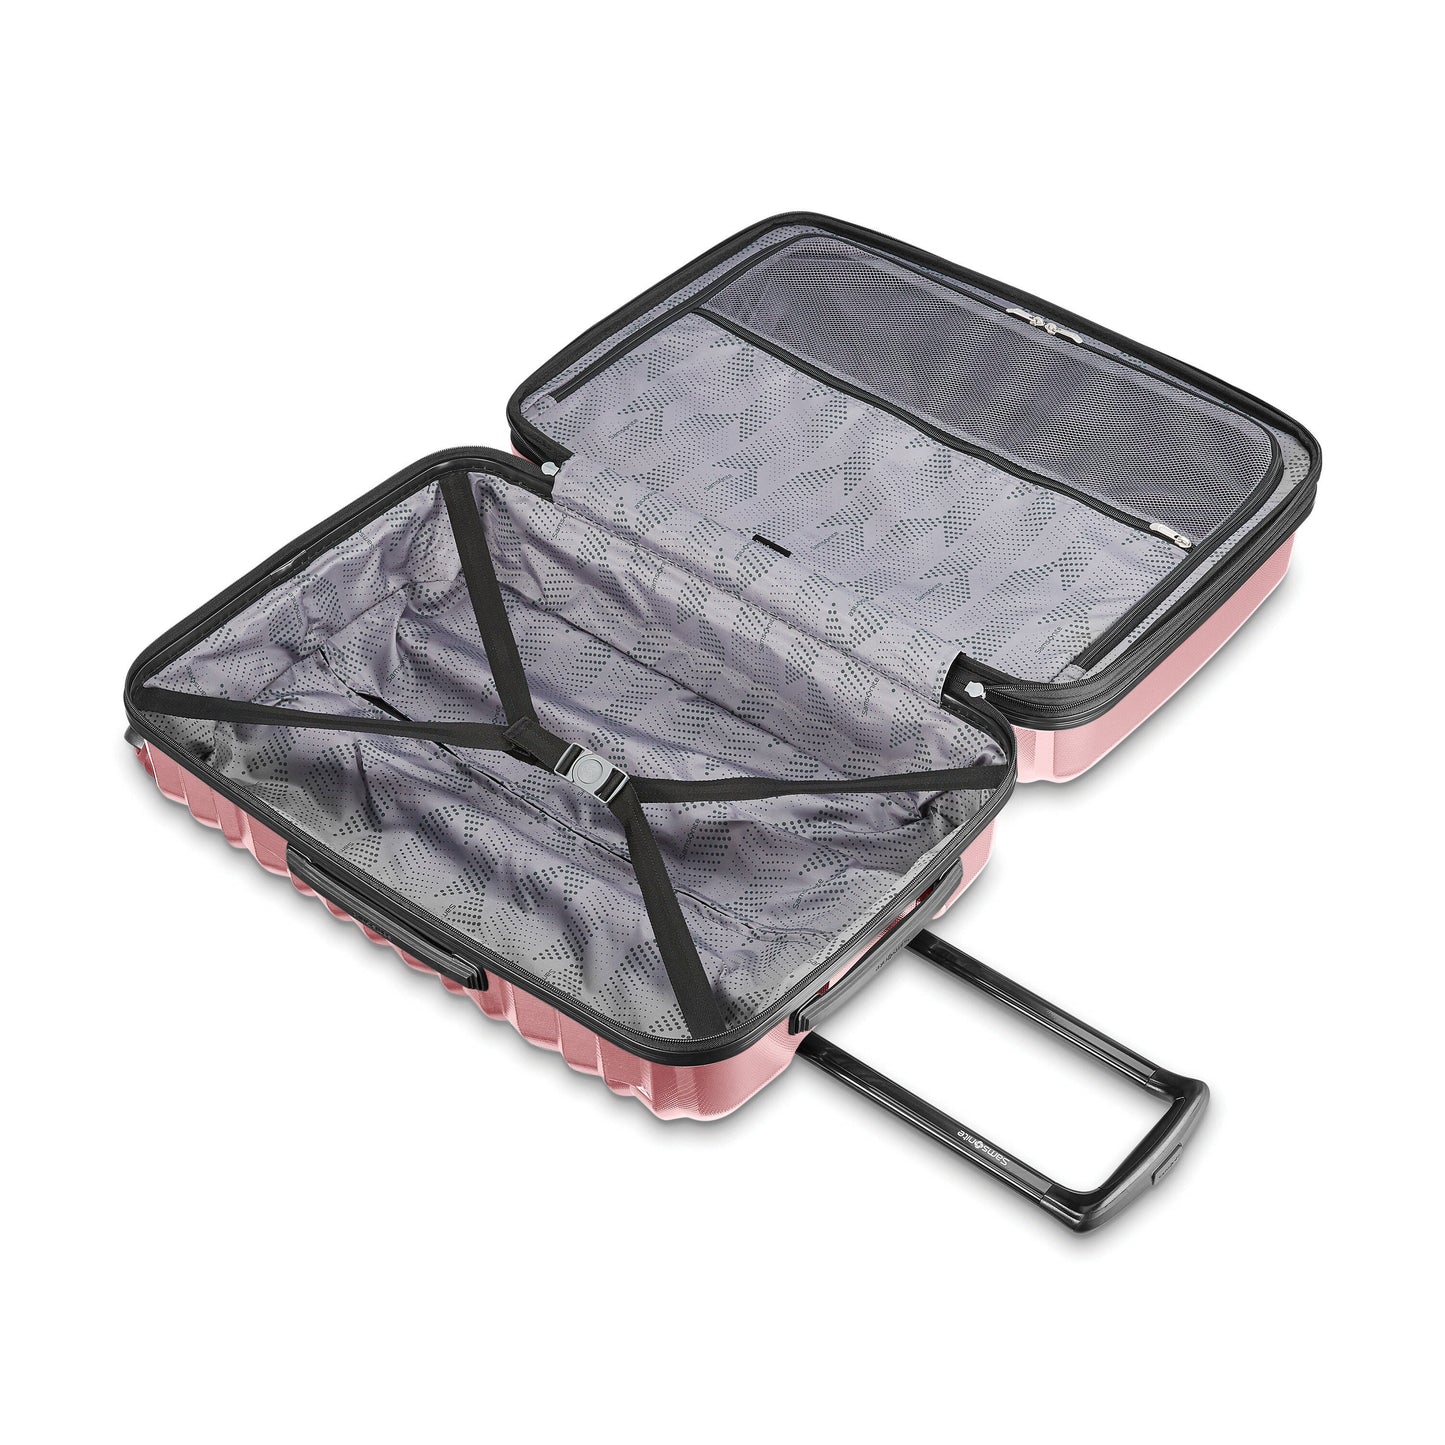 Samsonite Ziplite 4.0 Spinner Hardside Carry-On Luggage - Rose Gold